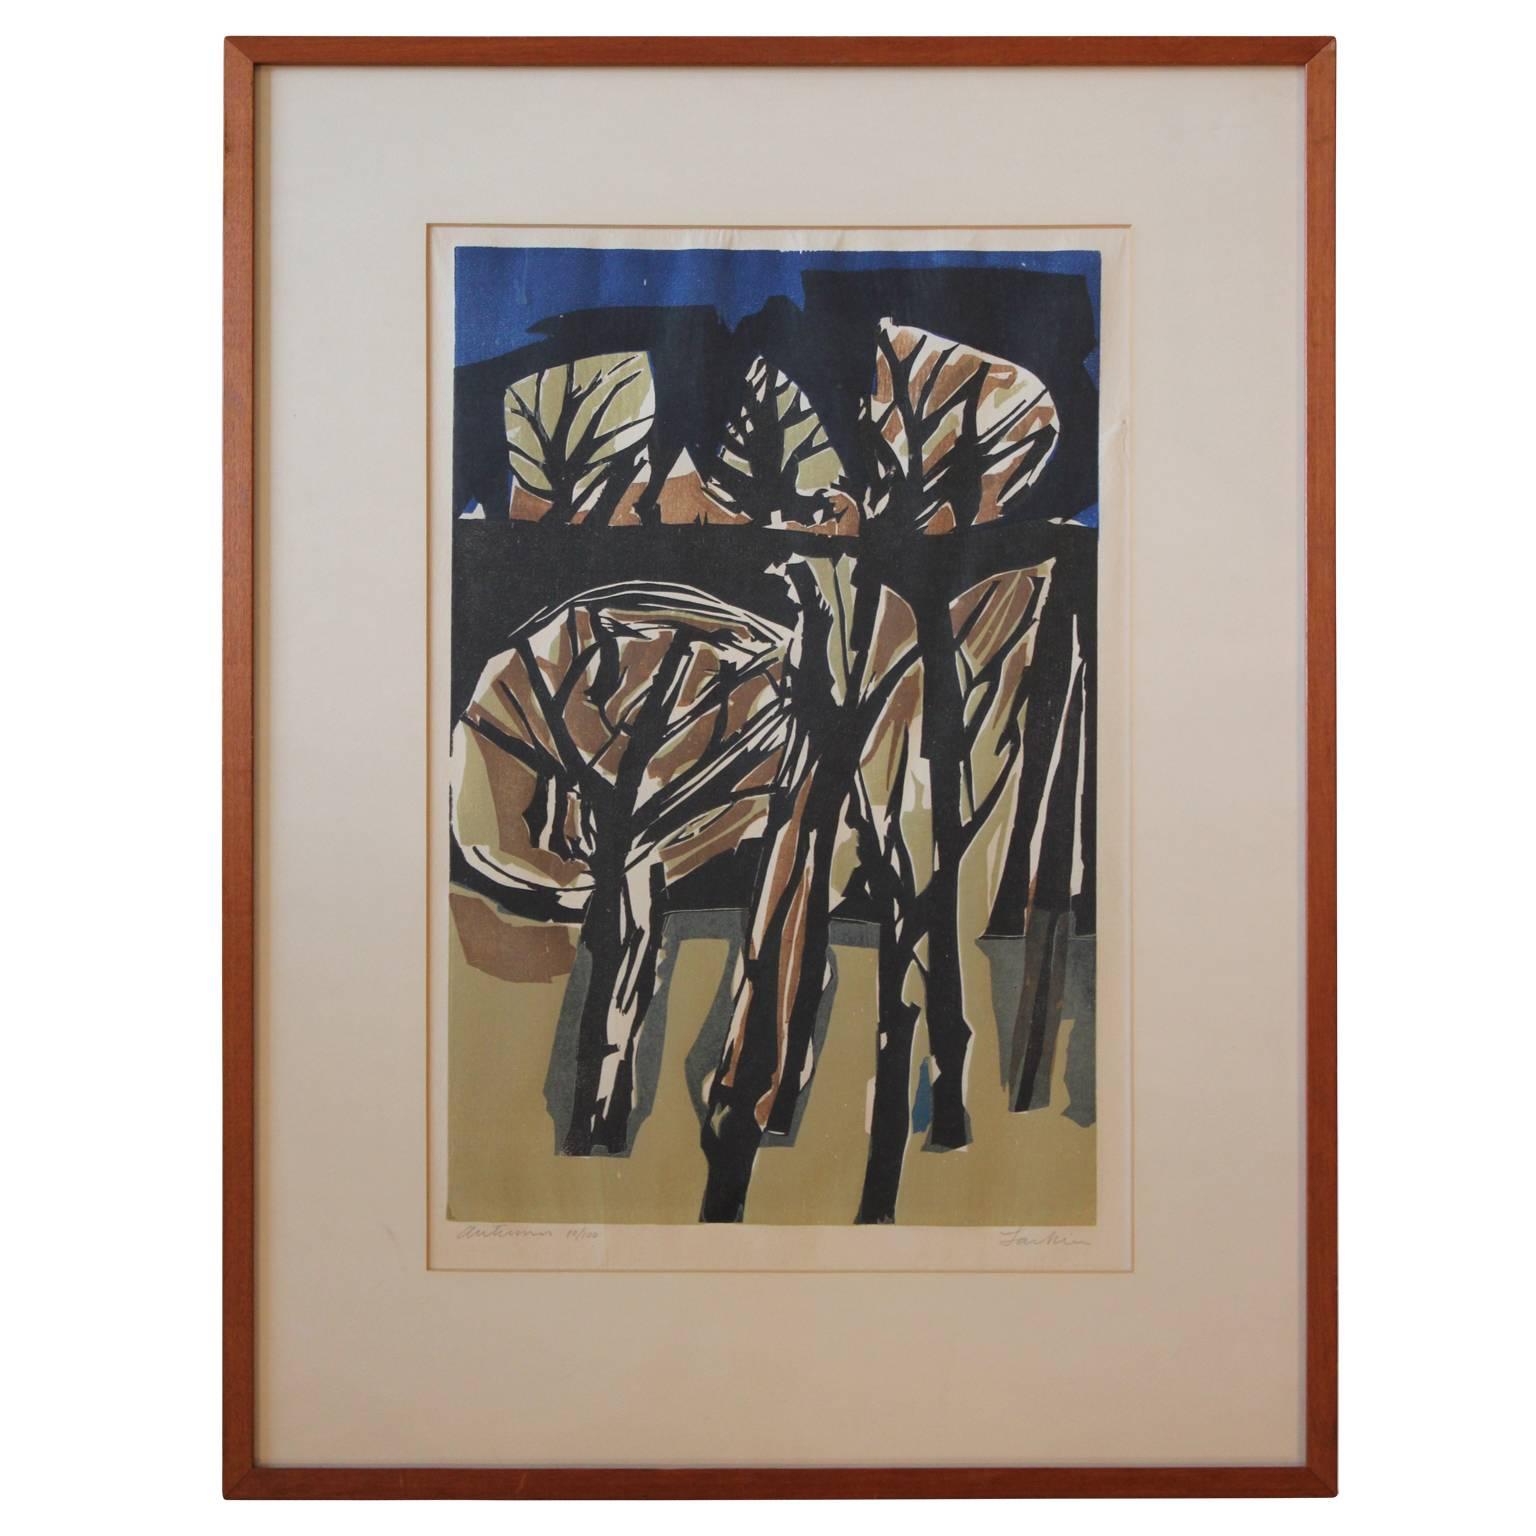 Eugene Larkin Abstract Print - "Autumn" Cubist Style Woodblock Print Edition 10/100 